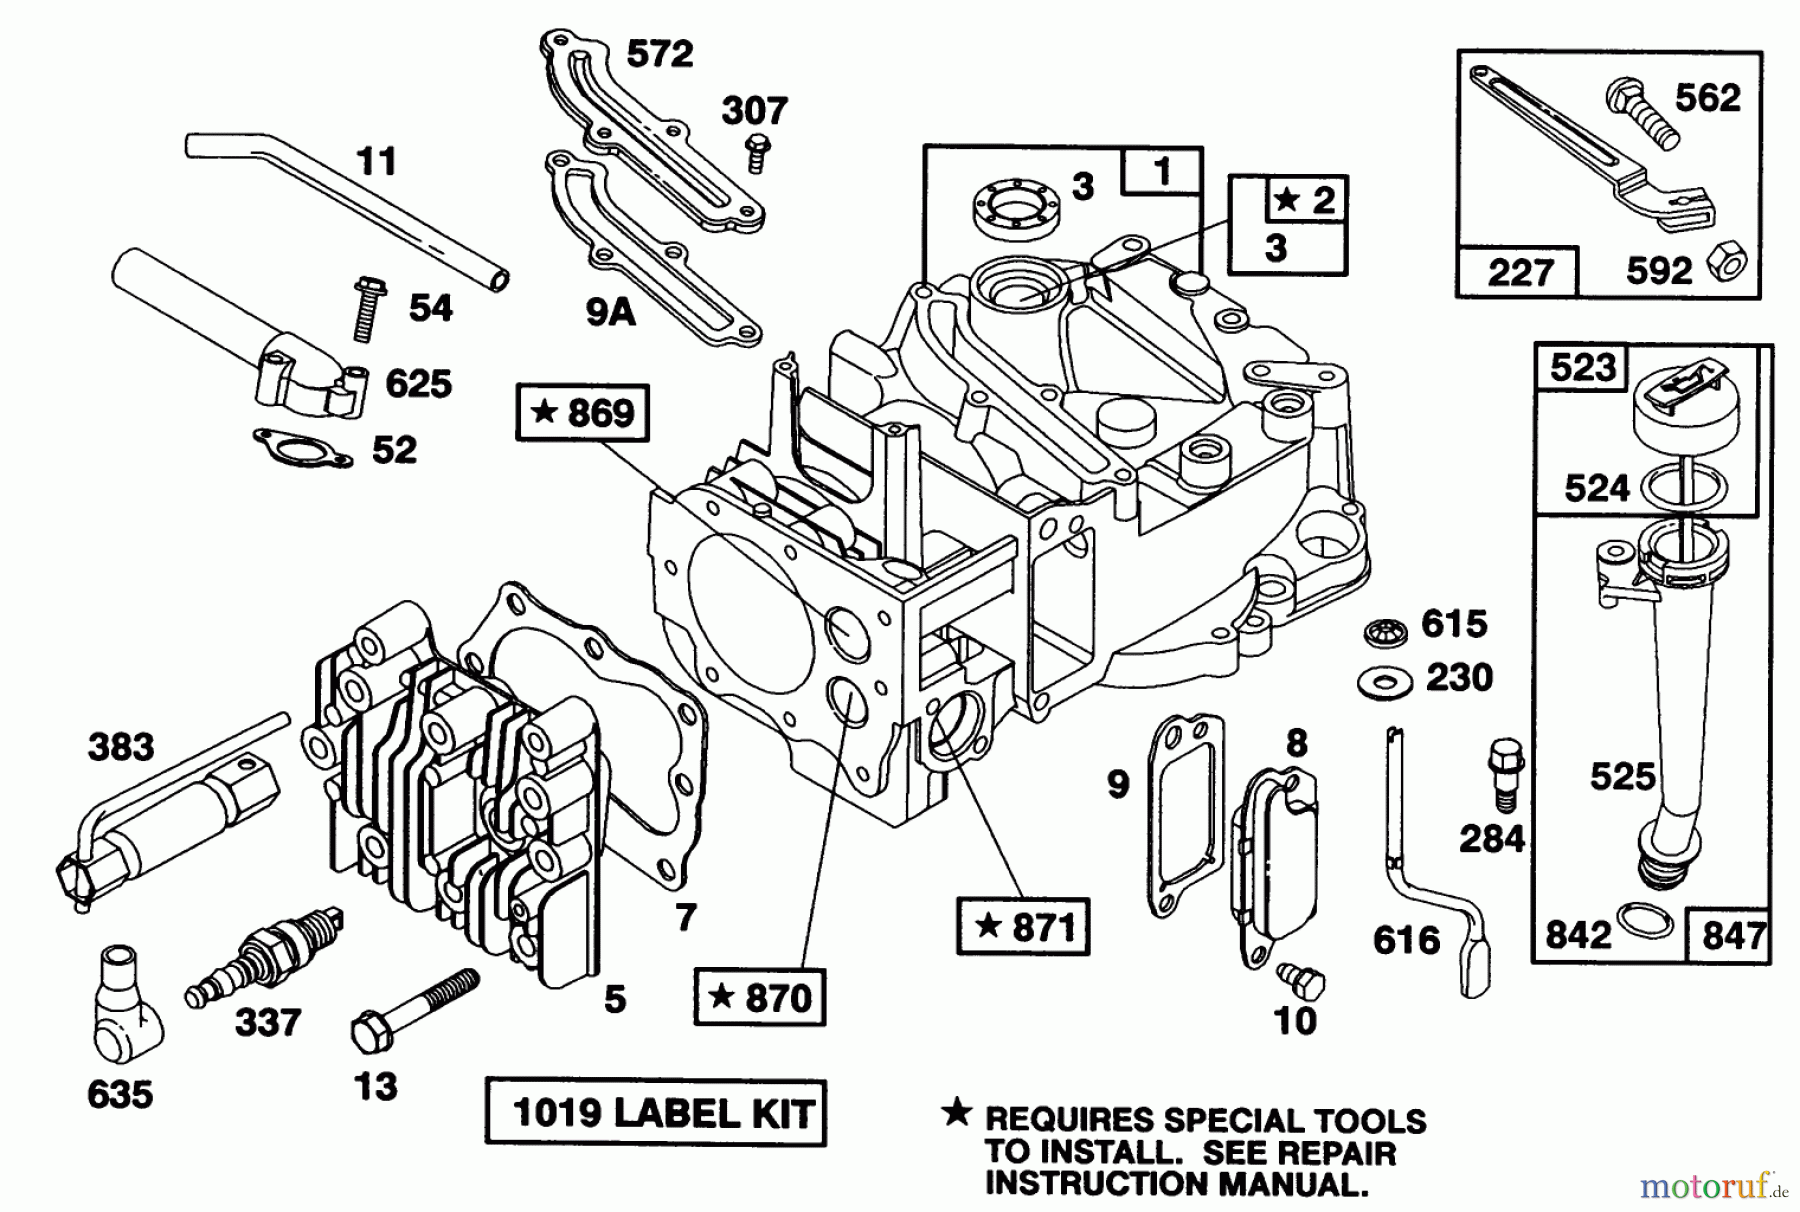  Toro Neu Mowers, Walk-Behind Seite 1 16400 - Toro Lawnmower, 1992 (2000001-2999999) ENGINE BRIGGS & STRATTON MODEL 122702-3171-01 #1